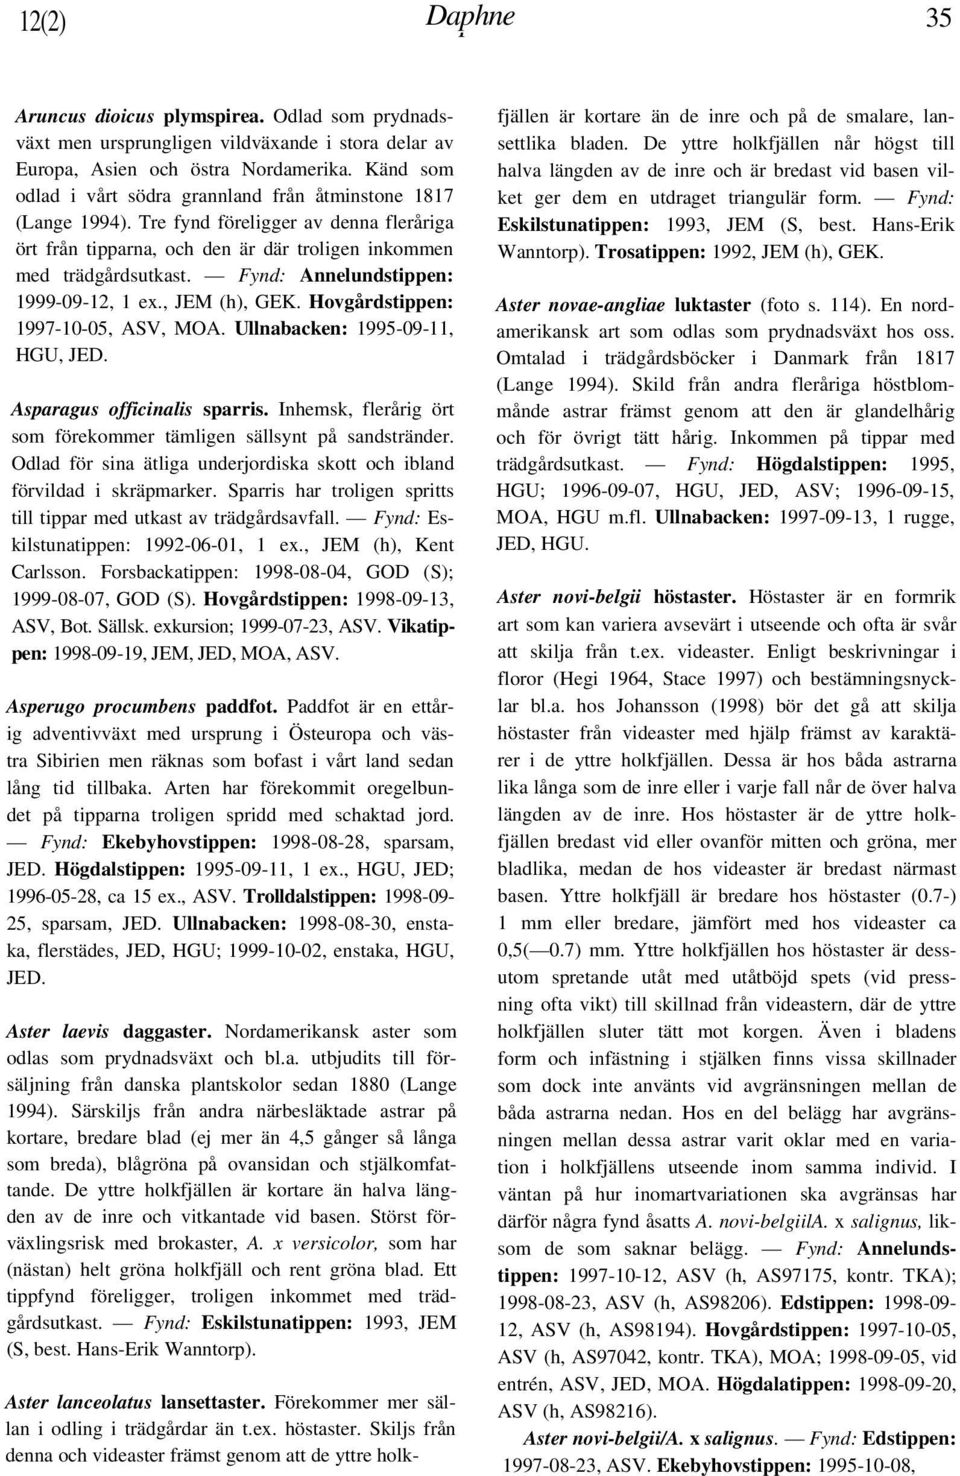 Fynd: Annelundstippen: 1999-09-12, 1 ex., JEM (h), GEK. Hovgårdstippen: 1997-10-05, ASV, MOA. Ullnabacken: 1995-09-11, HGU, JED. Asparagus officinalis sparris.